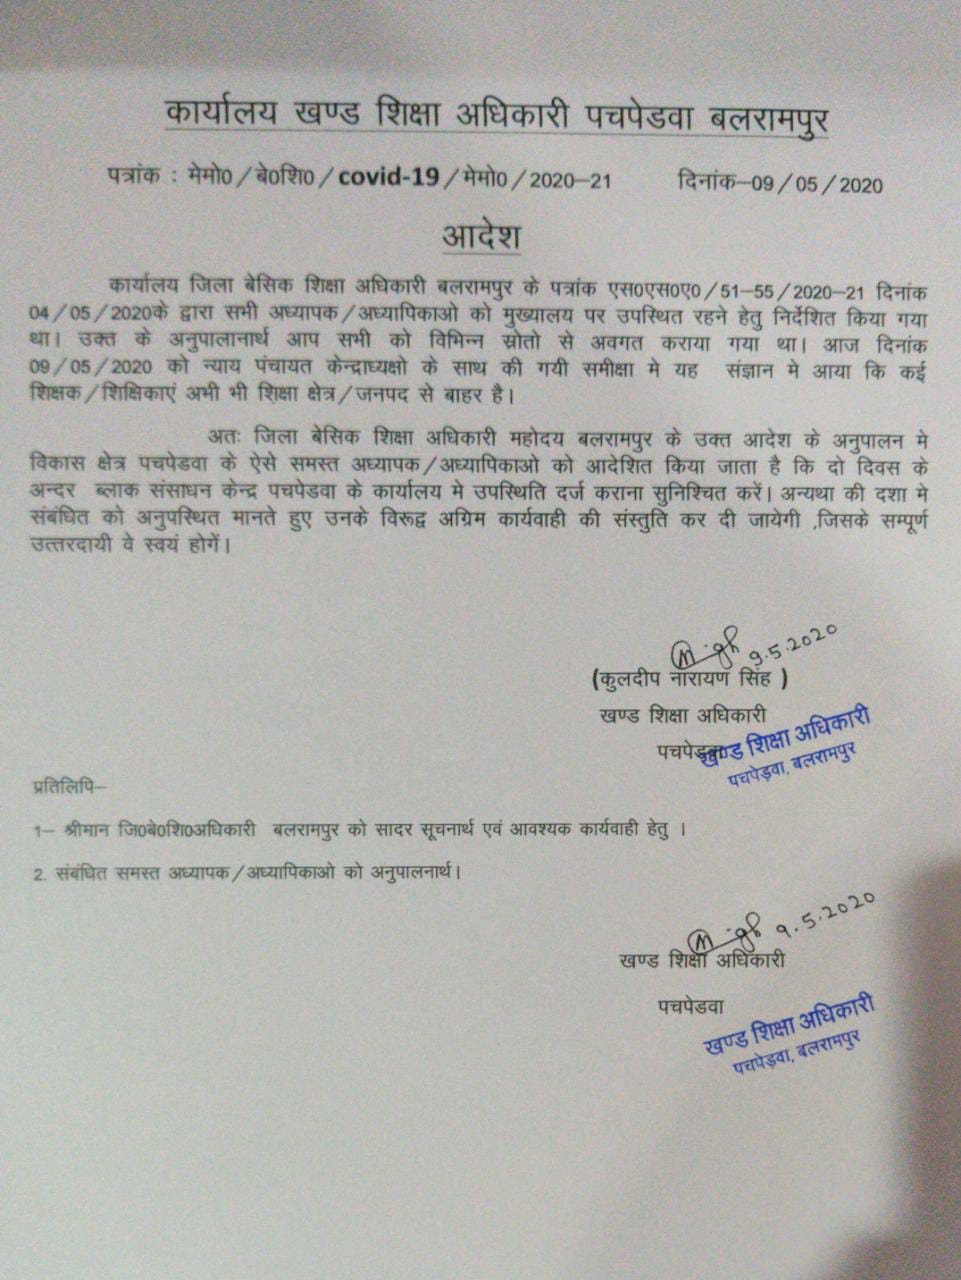 बेसिक शिक्षा अधिकारी Balrampur जनपद से बाहर के समस्त शिक्षक/ शिक्षिकाओं को 2 दिन की दी मोहलत